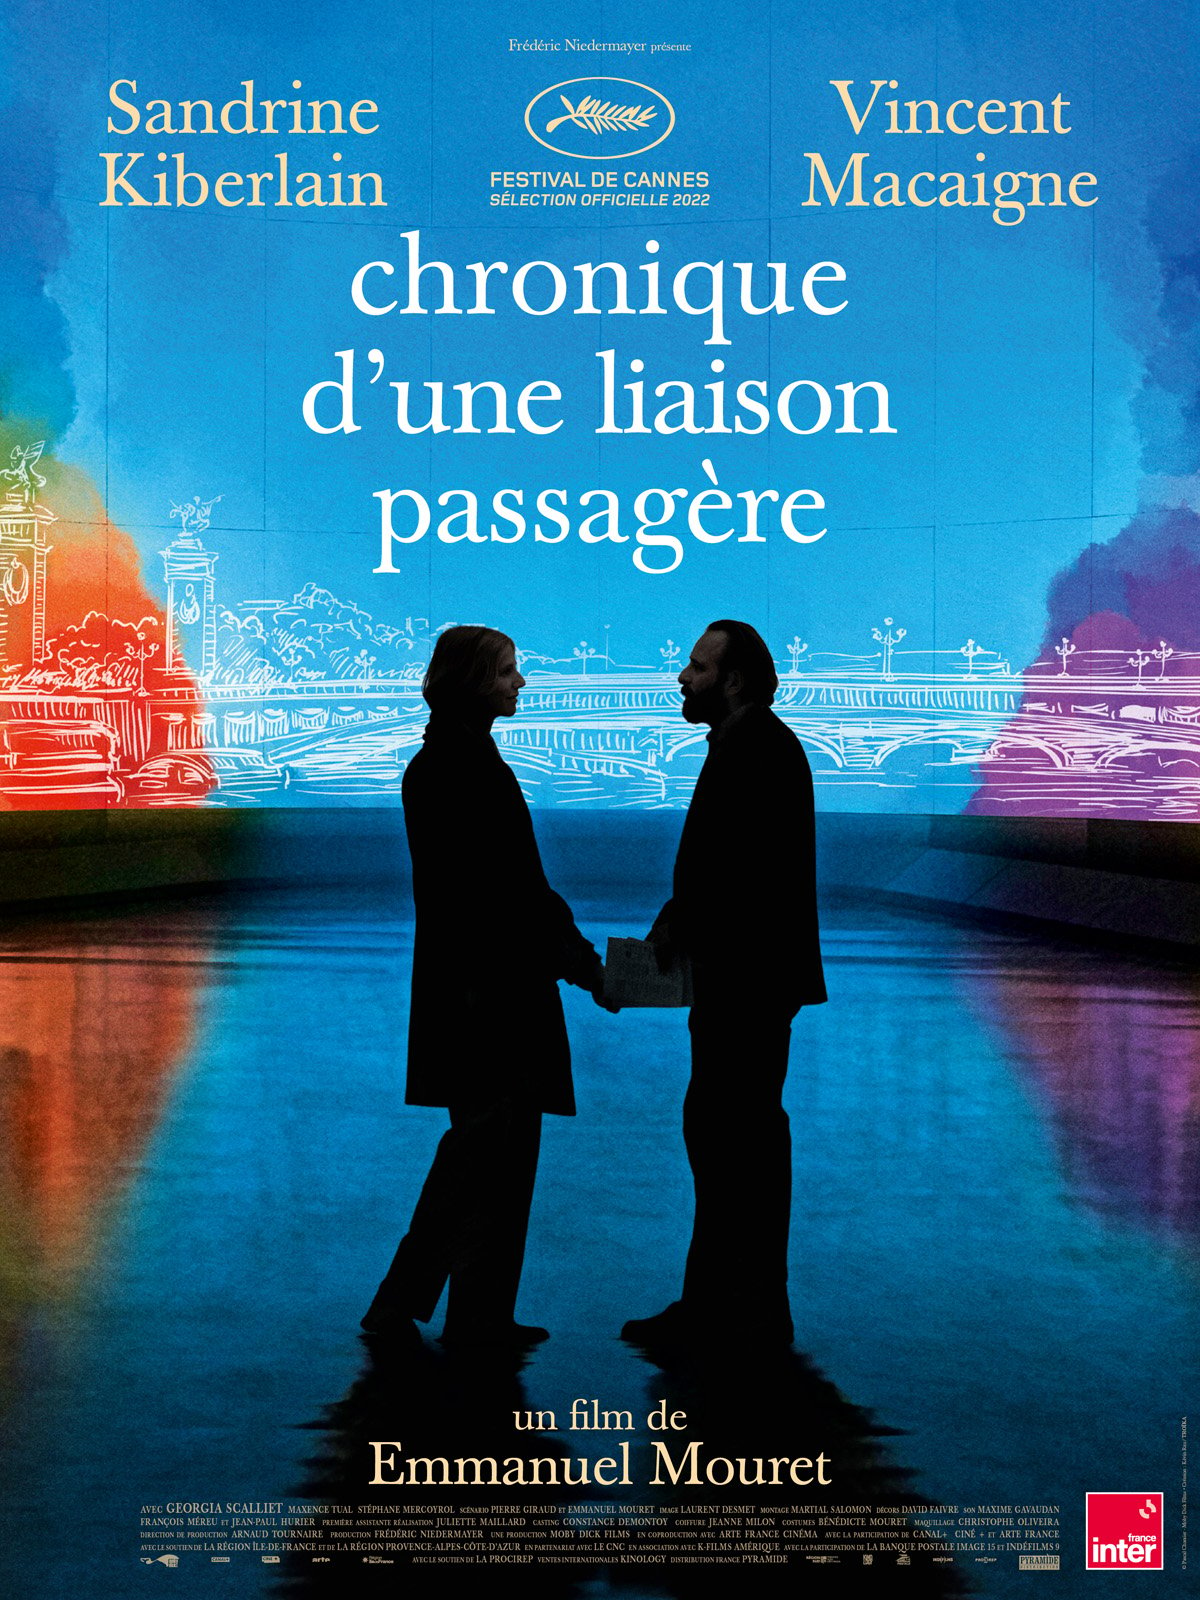 Cinémas et séances du film Chronique d'une liaison passagère - Aude - Chronique D'une Liaison Passagère